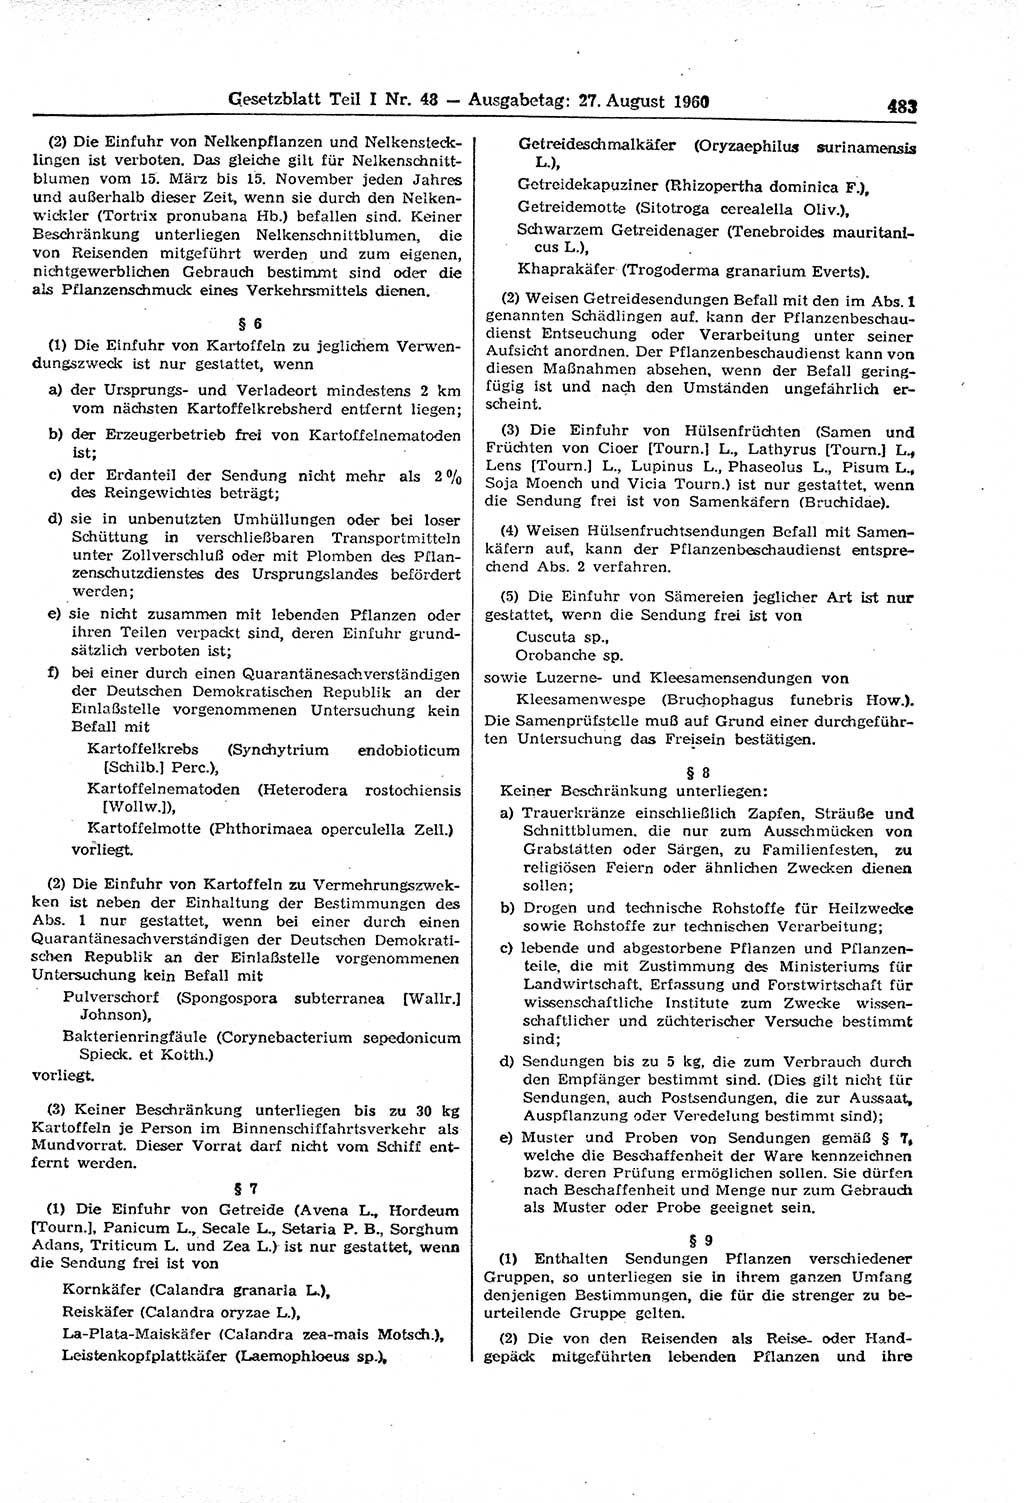 Gesetzblatt (GBl.) der Deutschen Demokratischen Republik (DDR) Teil Ⅰ 1960, Seite 483 (GBl. DDR Ⅰ 1960, S. 483)